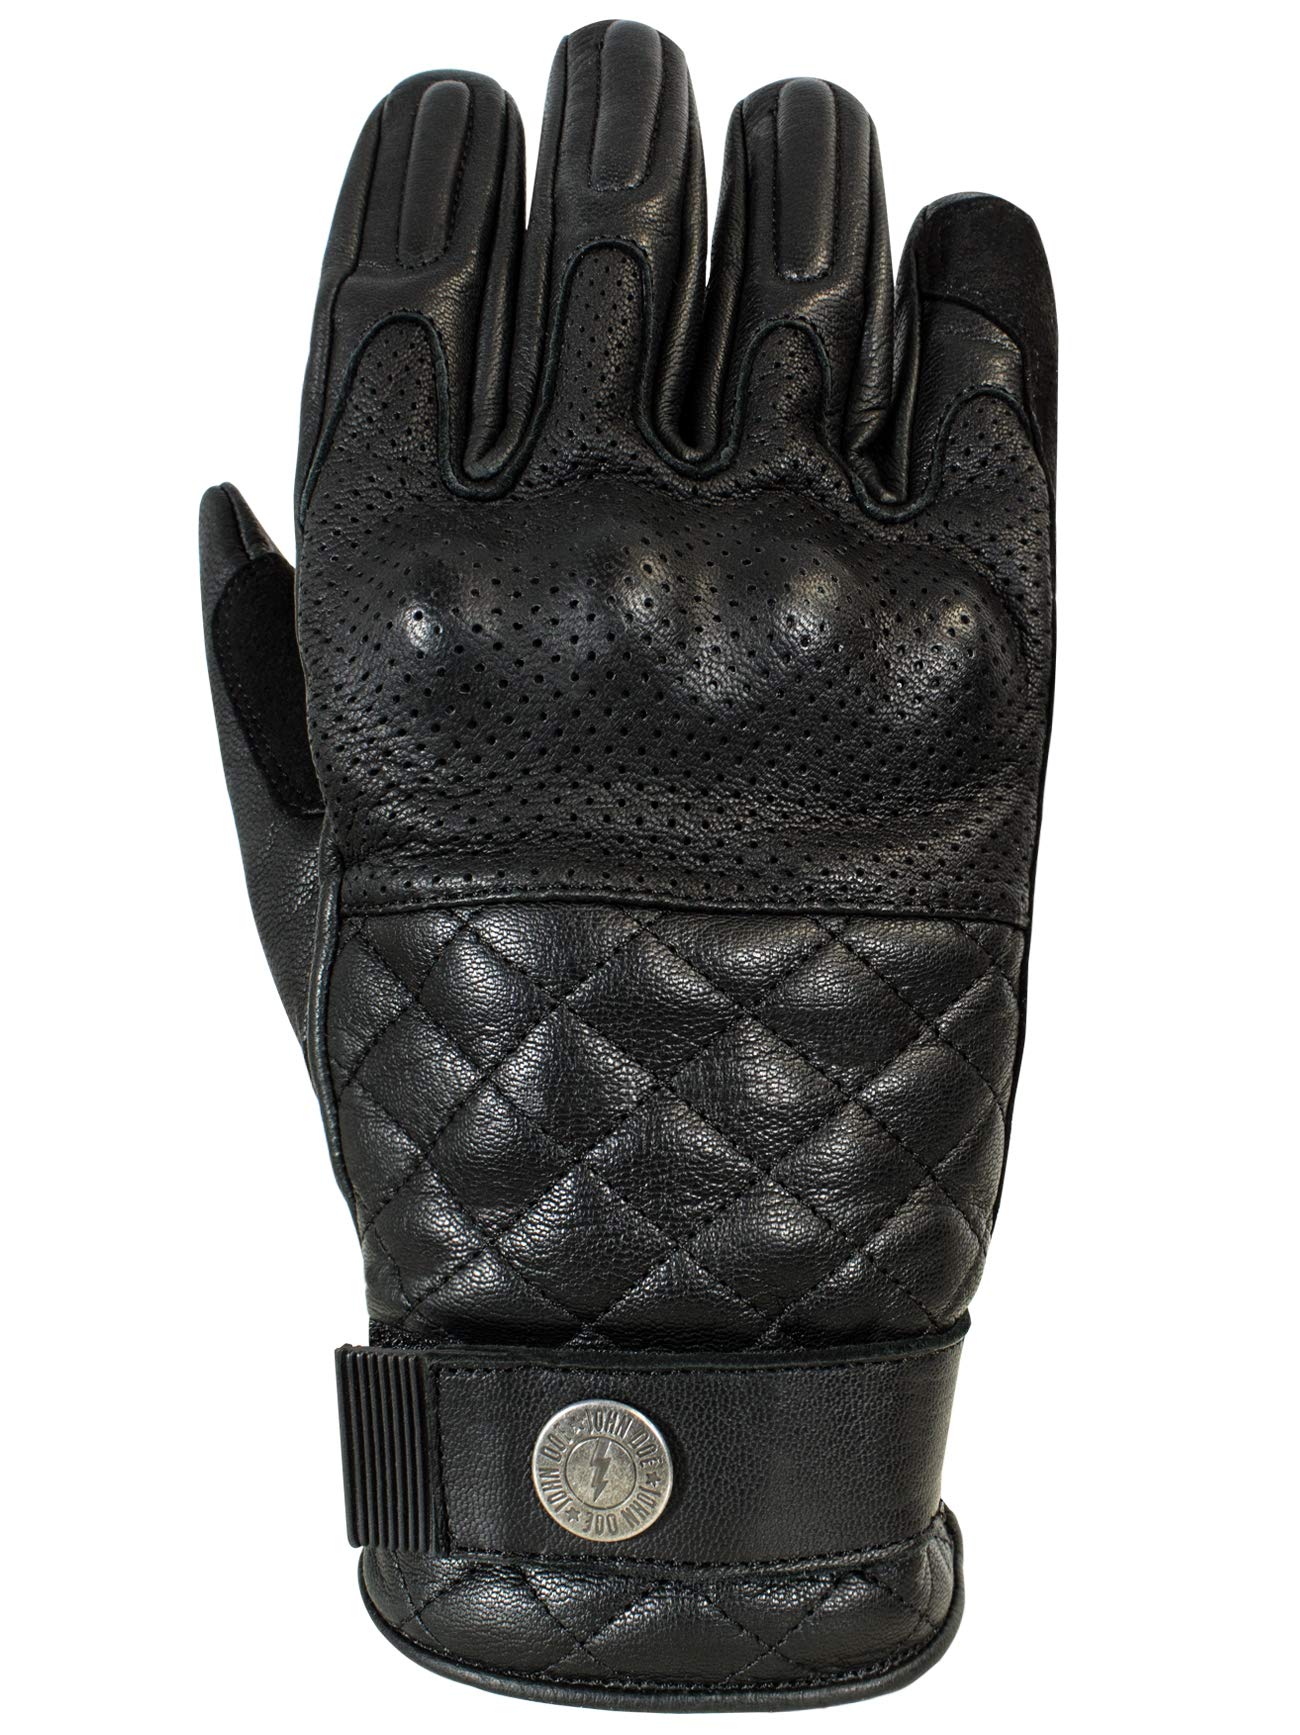 John Doe Handschuhe, Black/Brown,XL von John Doe